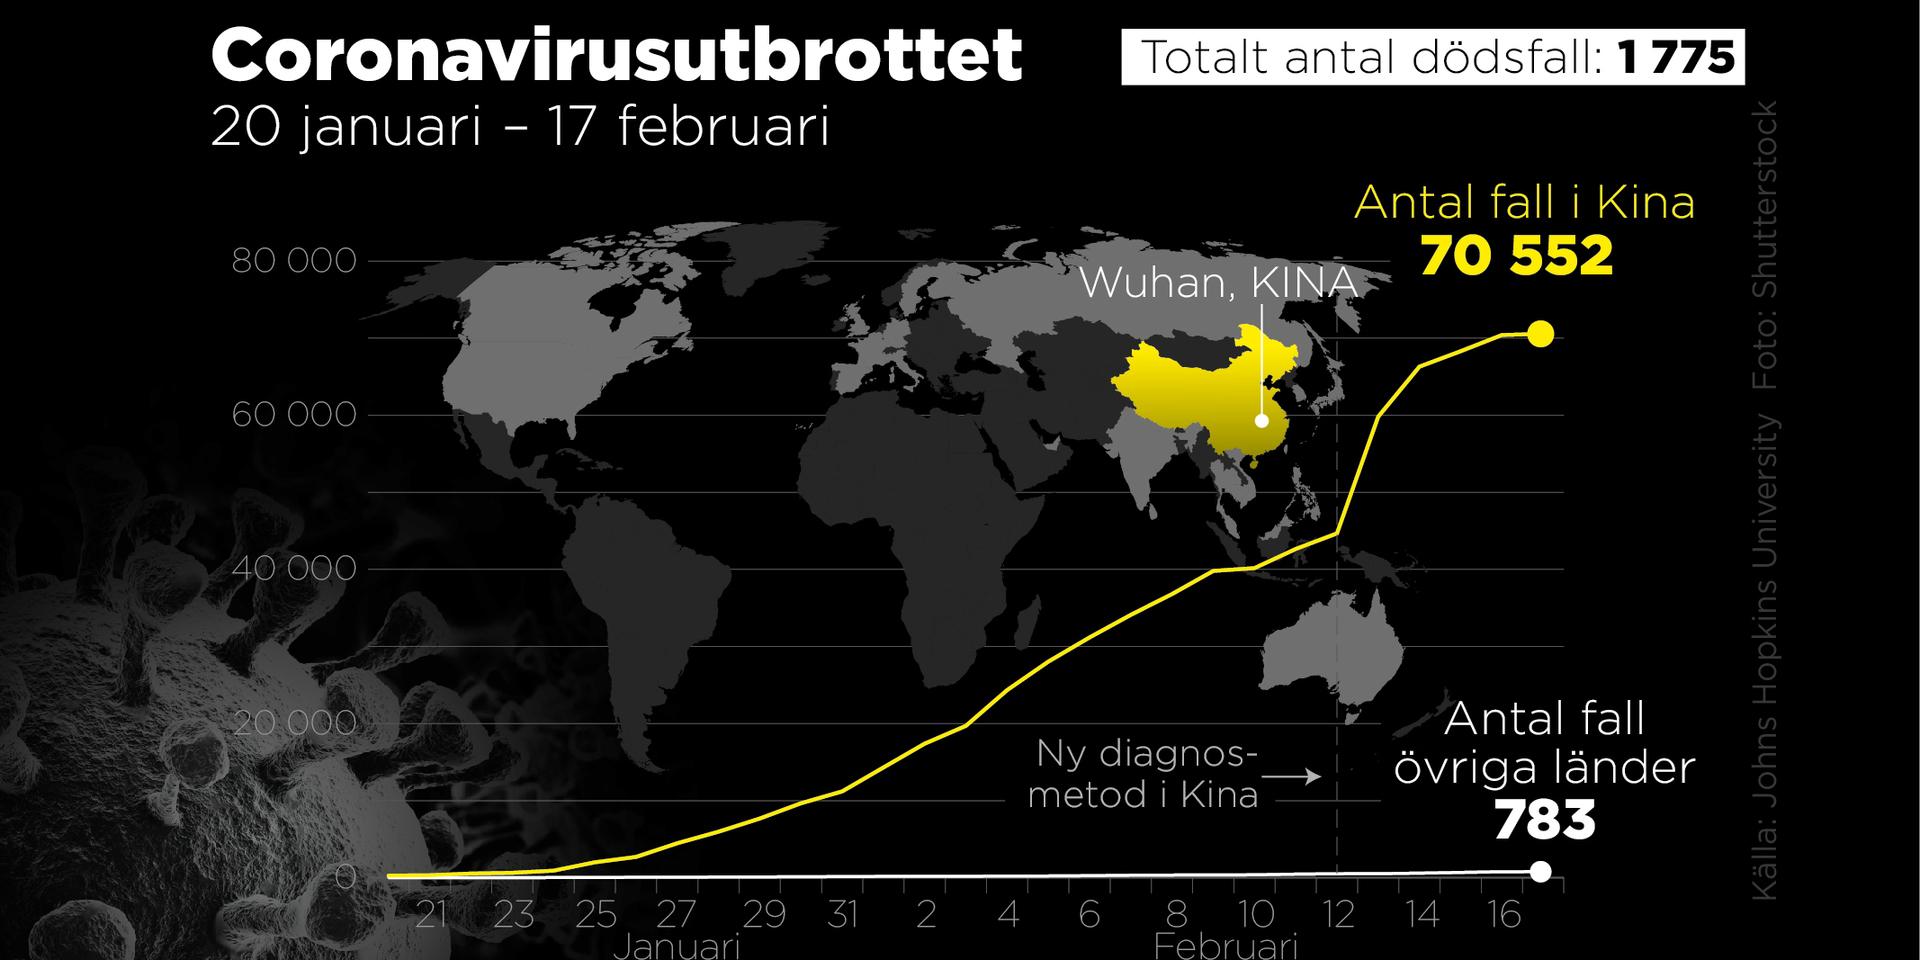 Antal smittade och antal dödsfall 20 januari–17 februari.